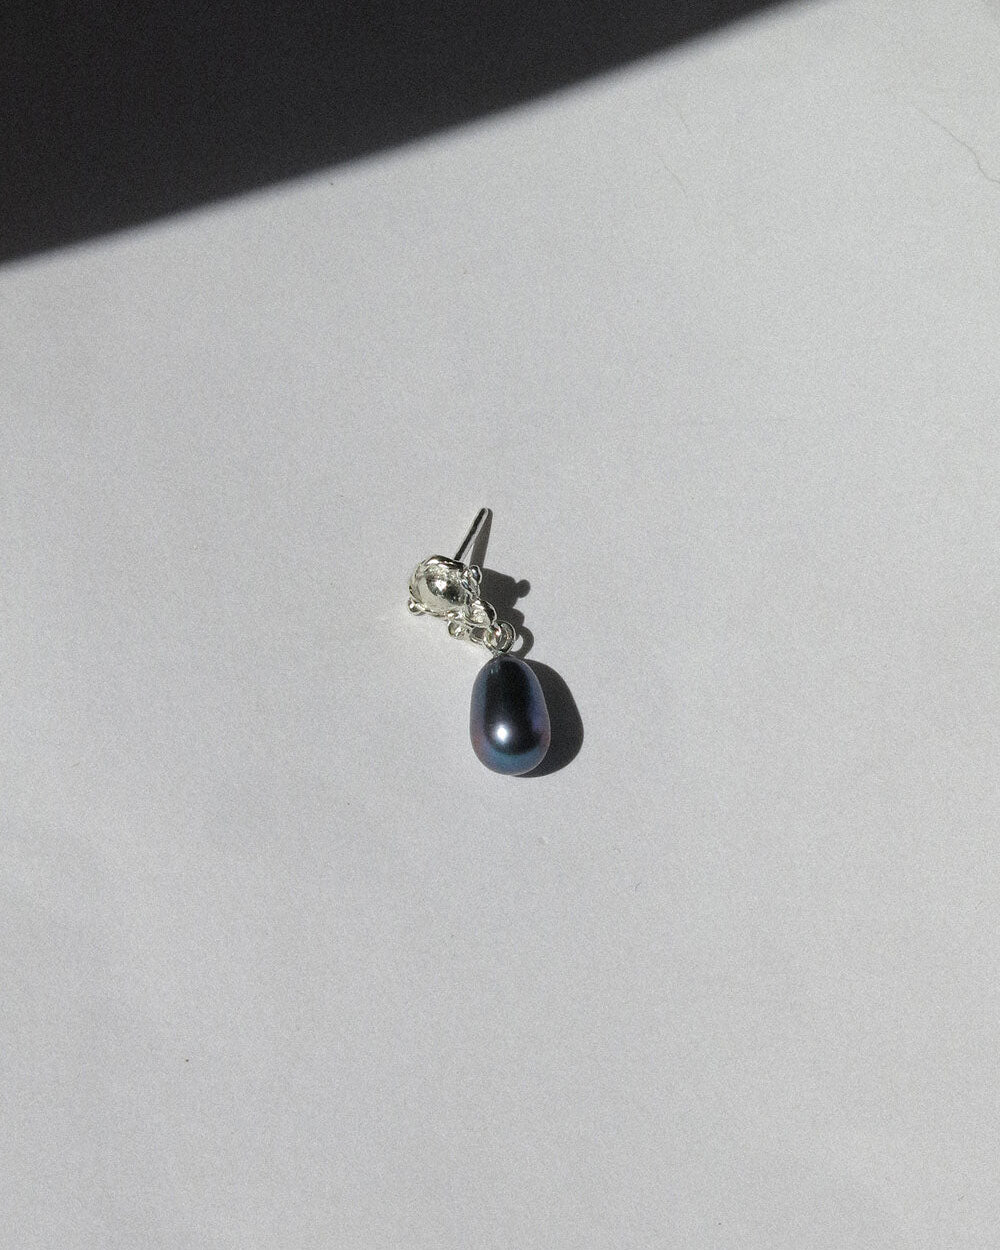 Eduardus single earring / dark rainbow pearl